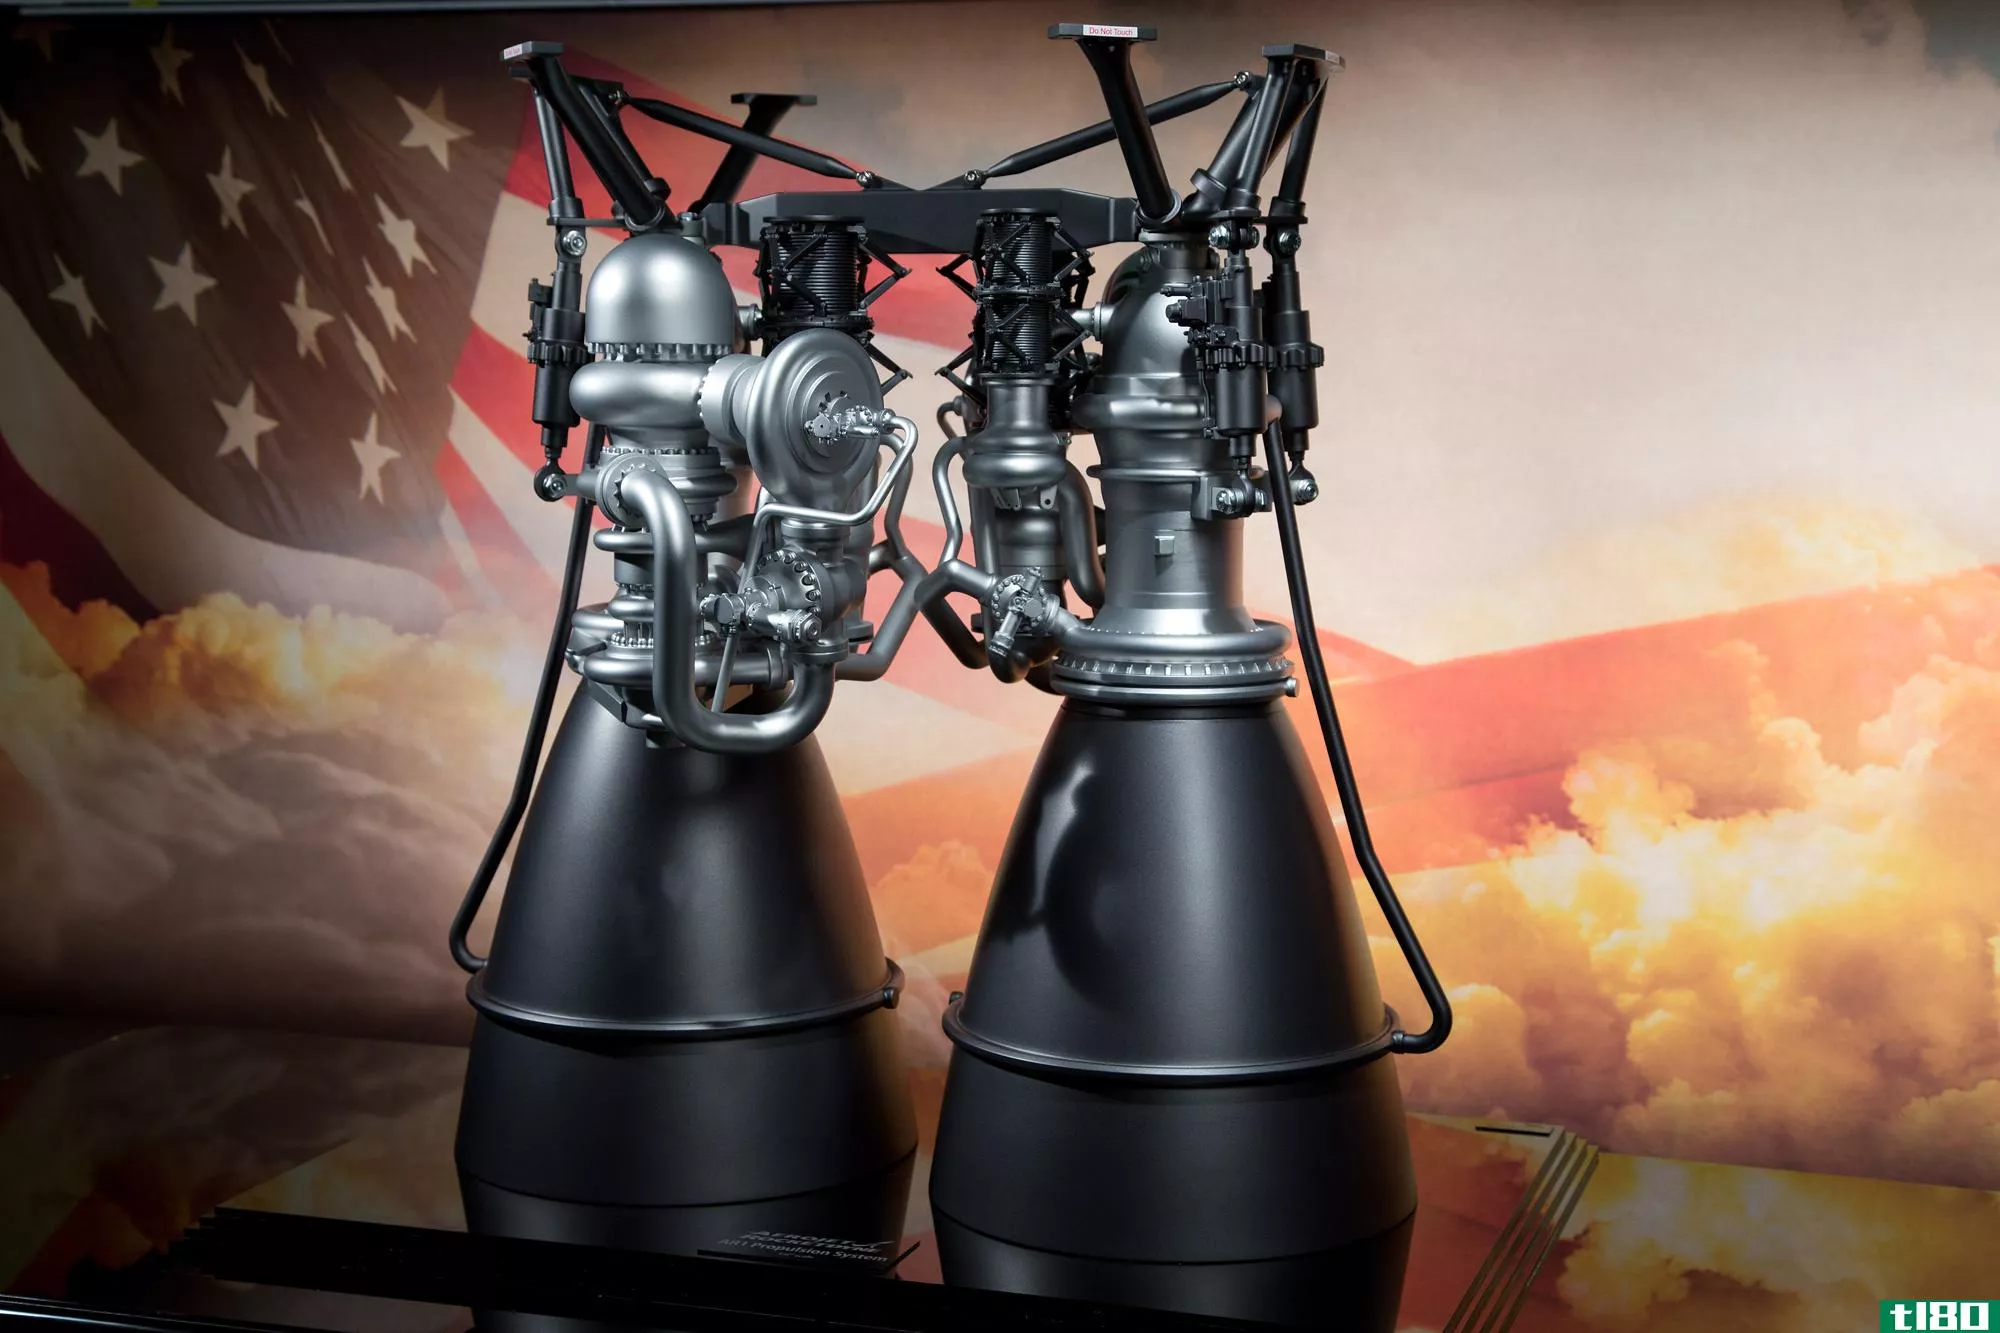 美国替代被禁的俄罗斯火箭发动机通过批评性审查